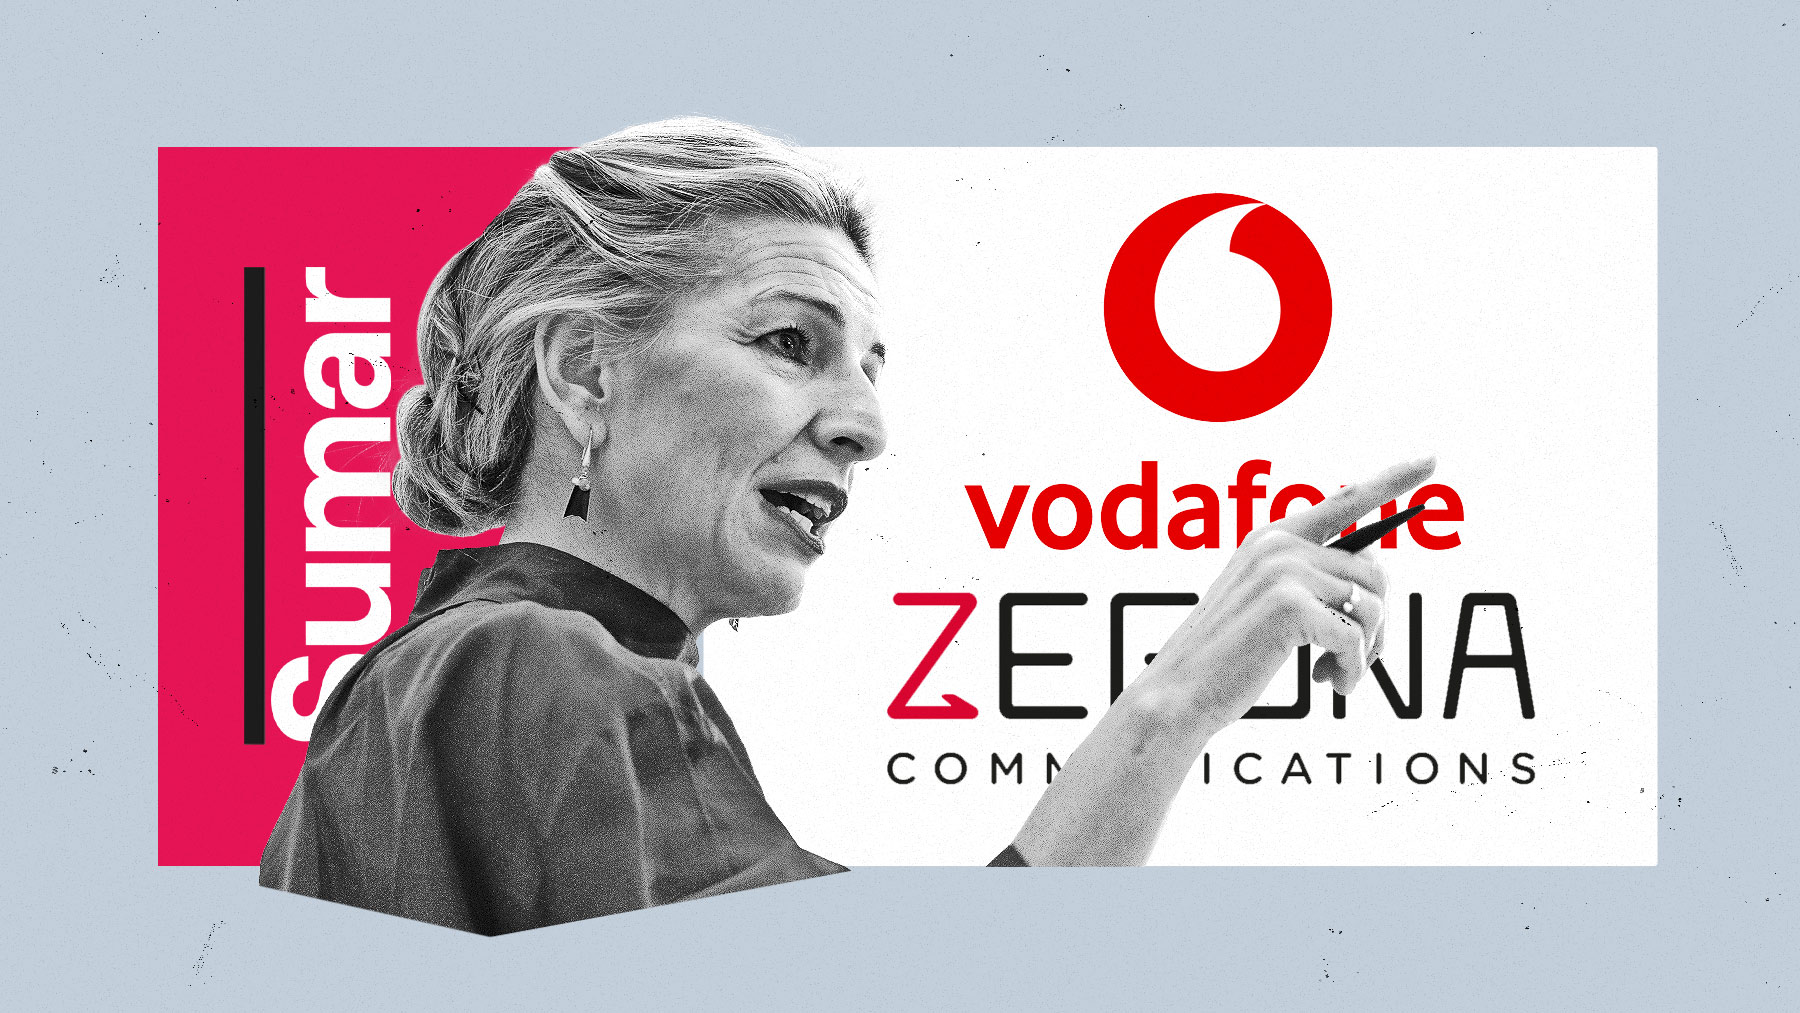 Zegona necesita la autorización del Gobierno español para consumar la adquisición de Vodafone España.